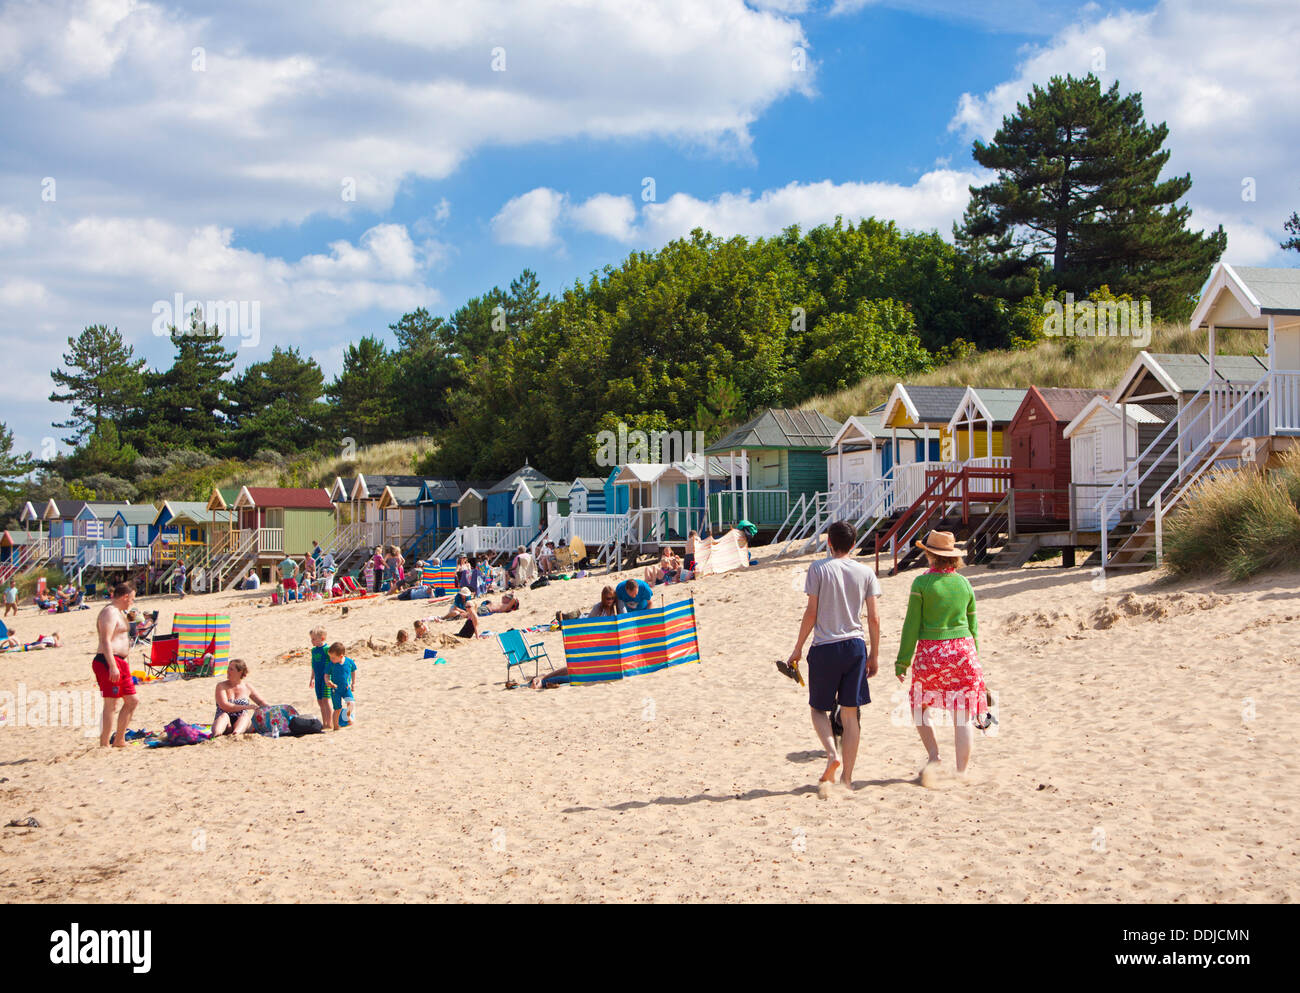 Plage animée et cabines de plage au Wells next the sea North Norfolk Coast England UK GB EU Europe Banque D'Images